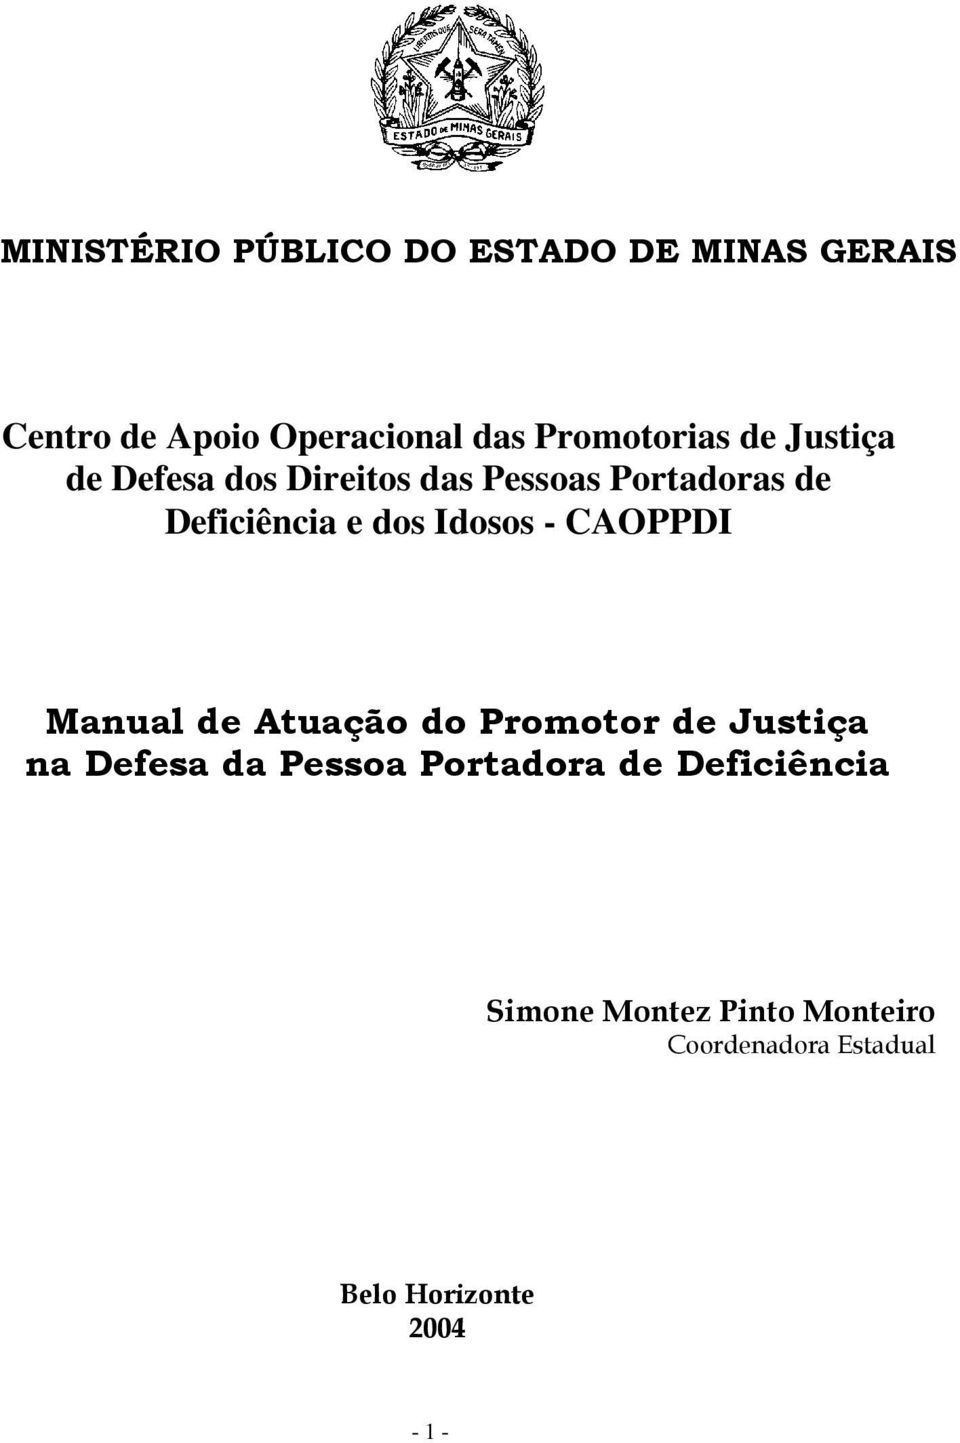 dos Idosos - CAOPPDI Manual de Atuação do Promotor de Justiça na Defesa da Pessoa